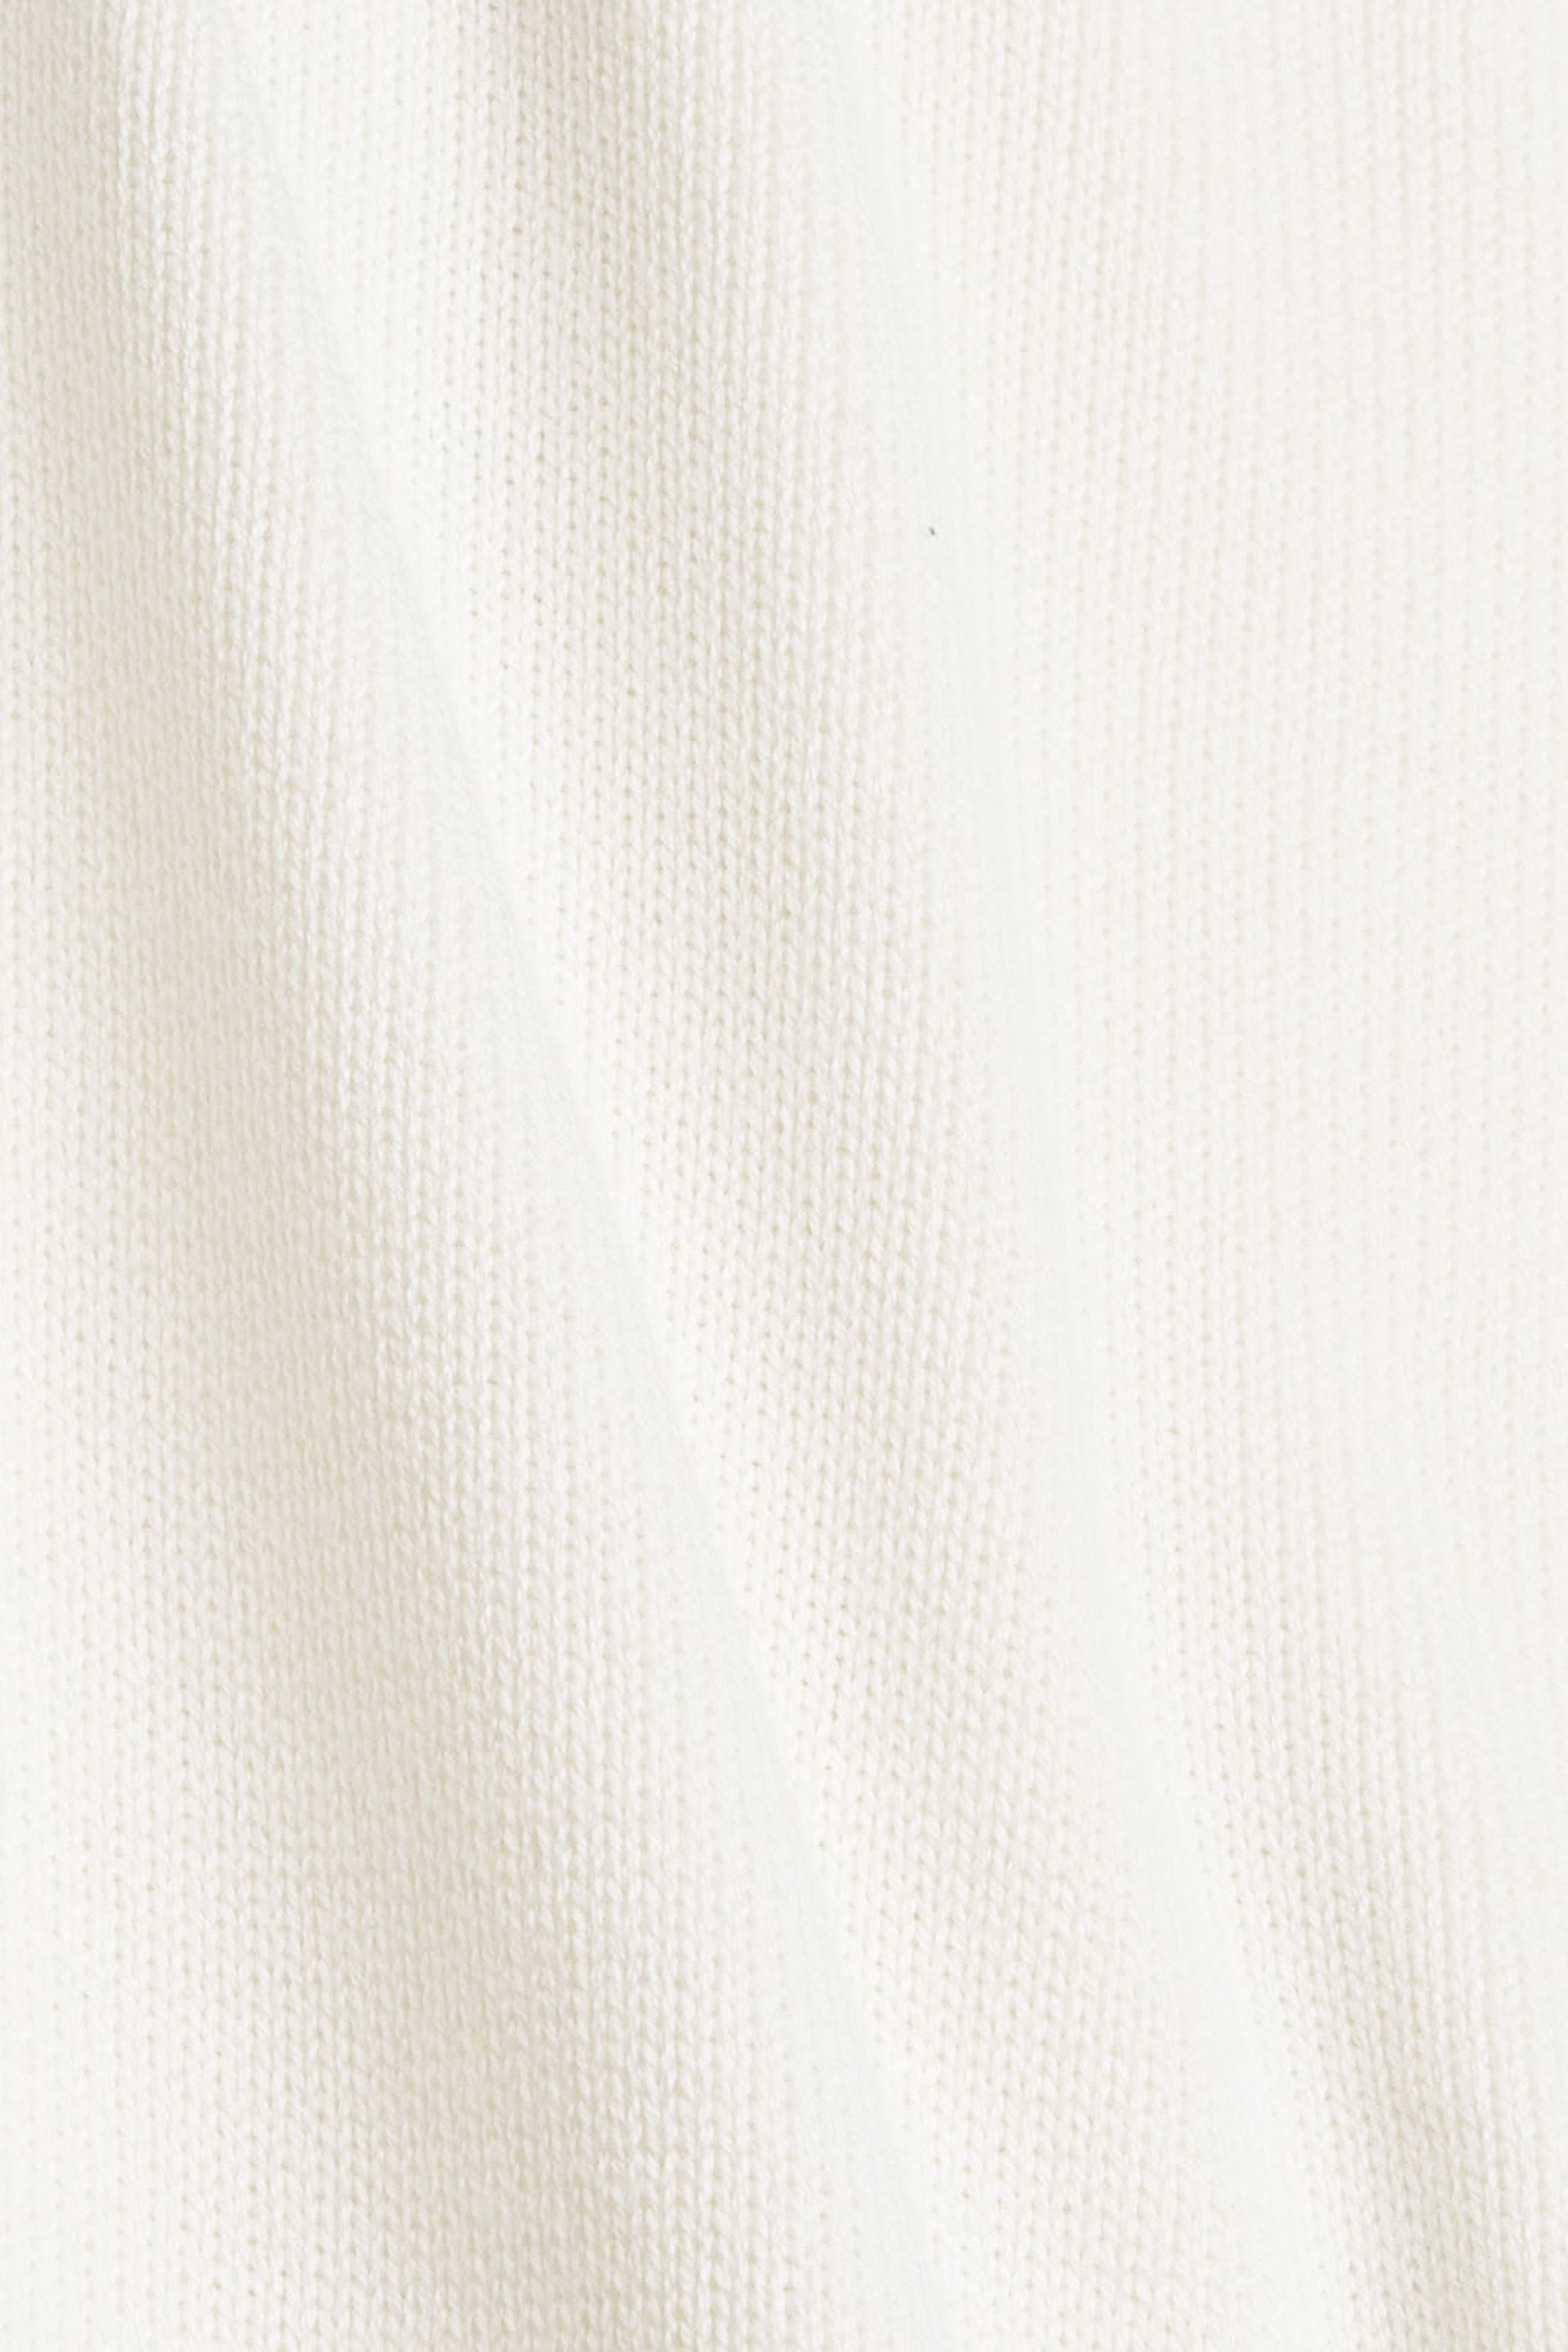 Pullover a maglia con spacchi, Bianco, large